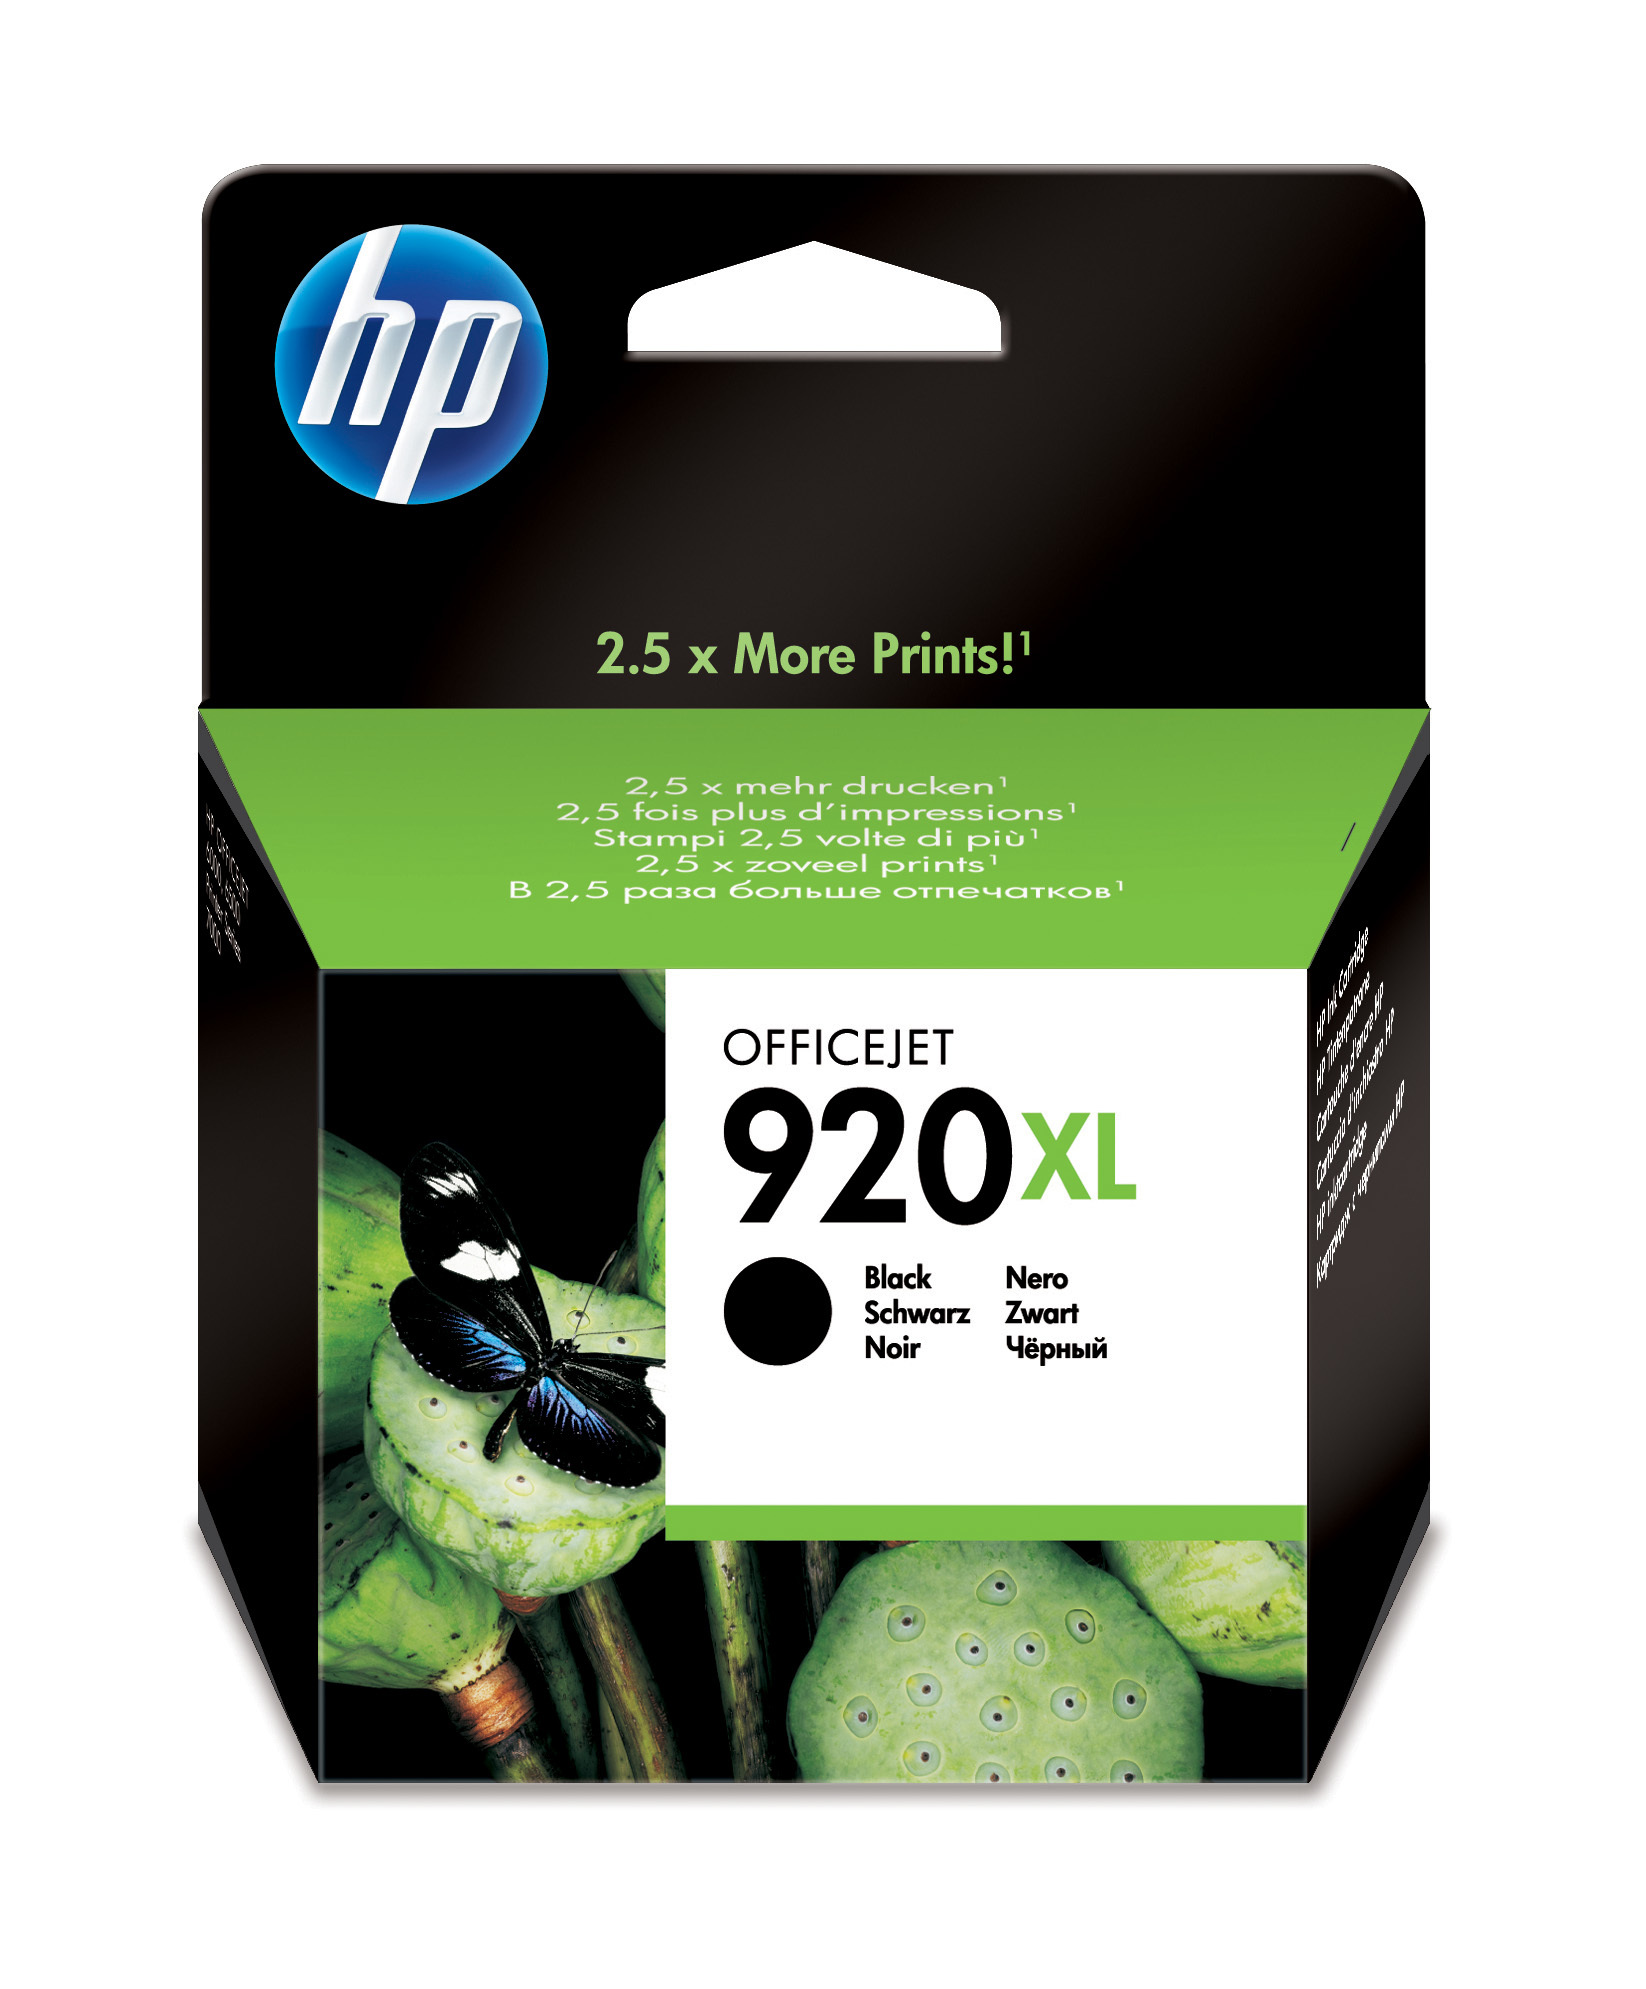 HP 920XL Black Officejet Ink Cartridge single pack / zwart